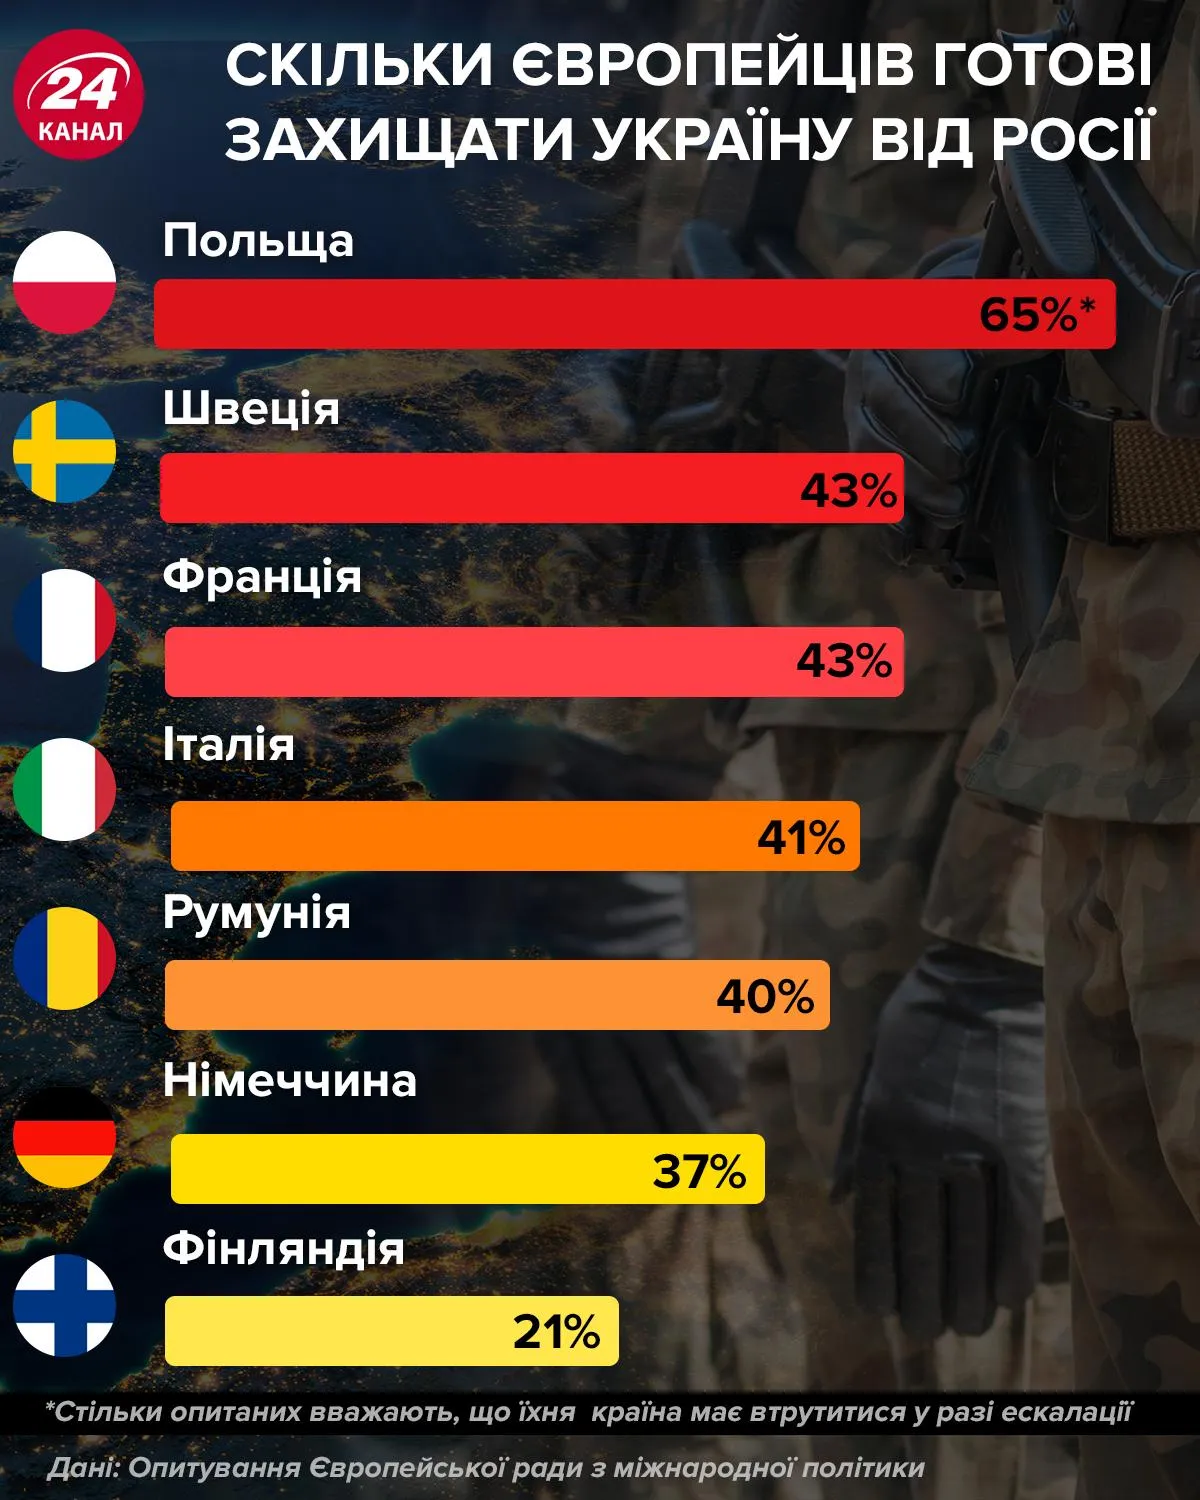 Cкільки європейців готові захищати Україну від Росії